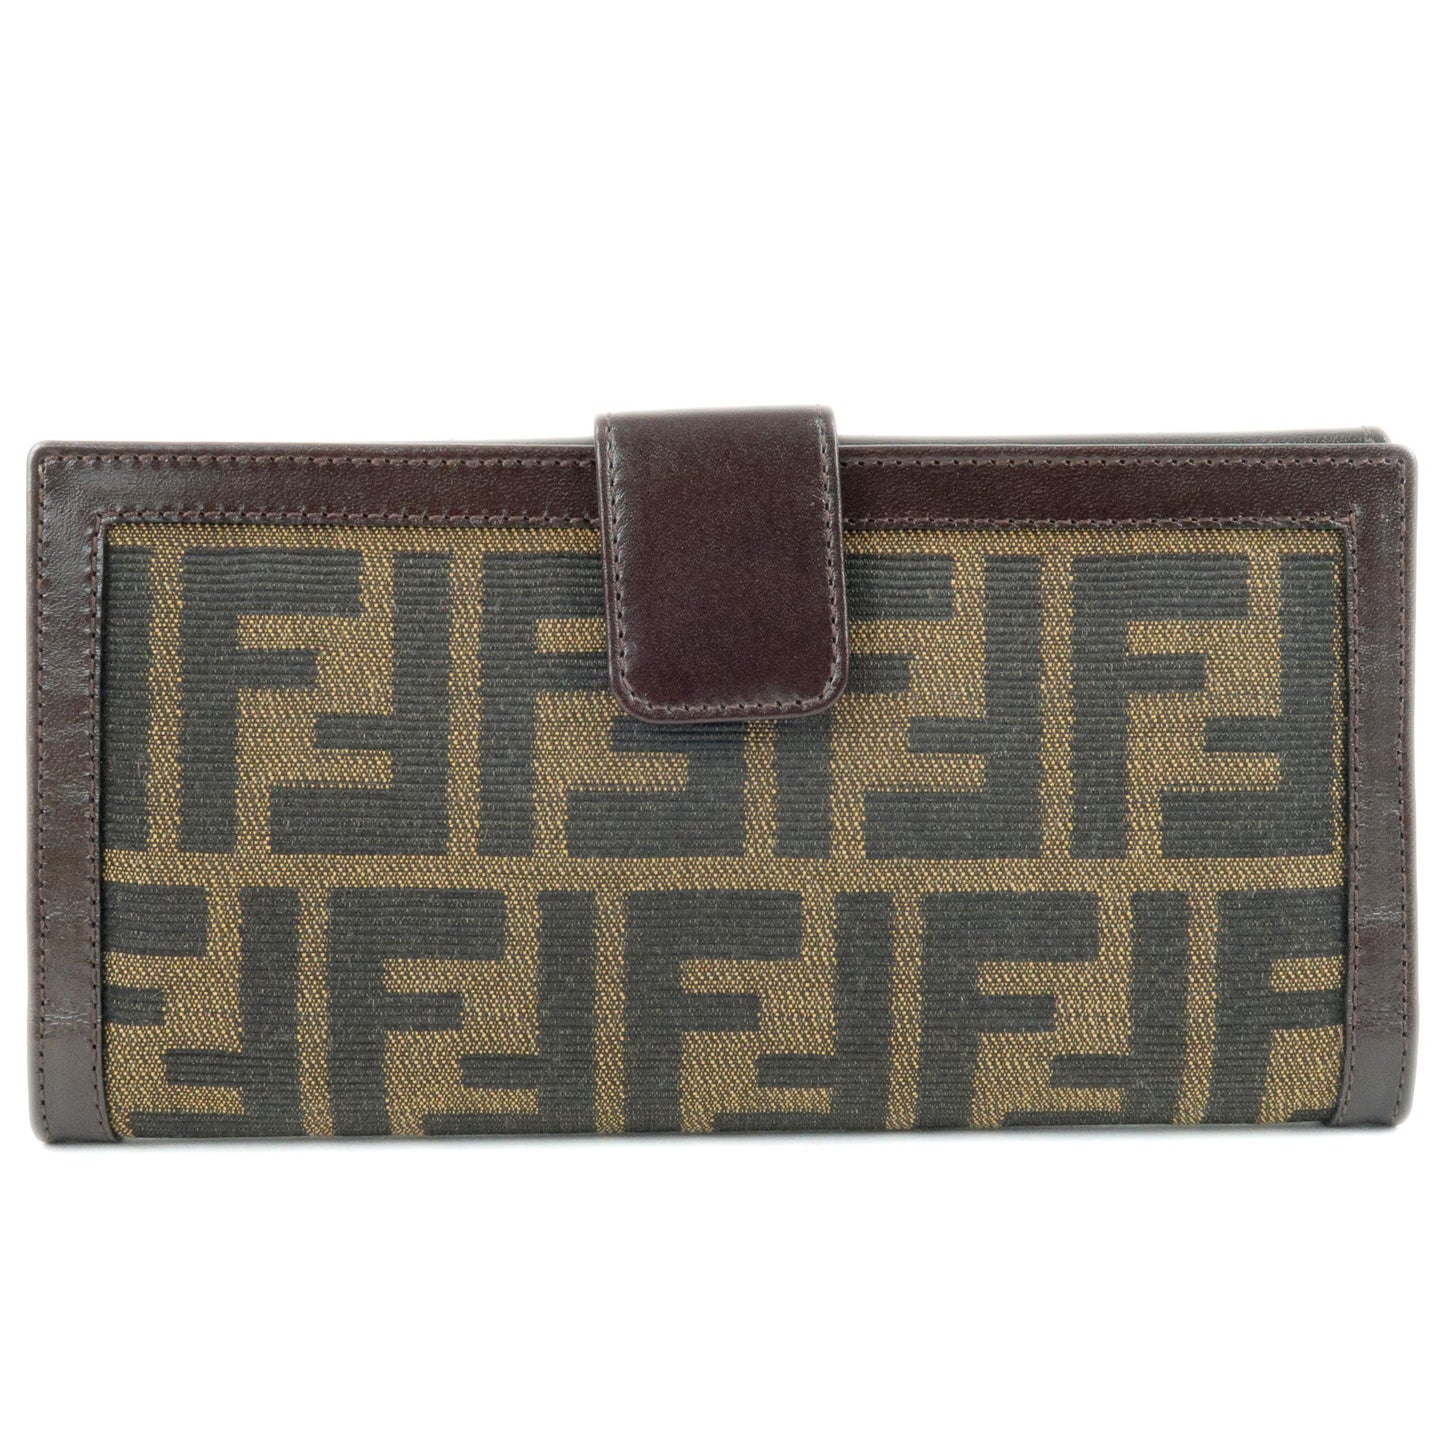 FENDI-Zucca-Canvas-Leather-Bi-Fold-Long-Wallet-Brown-Khaki-01339